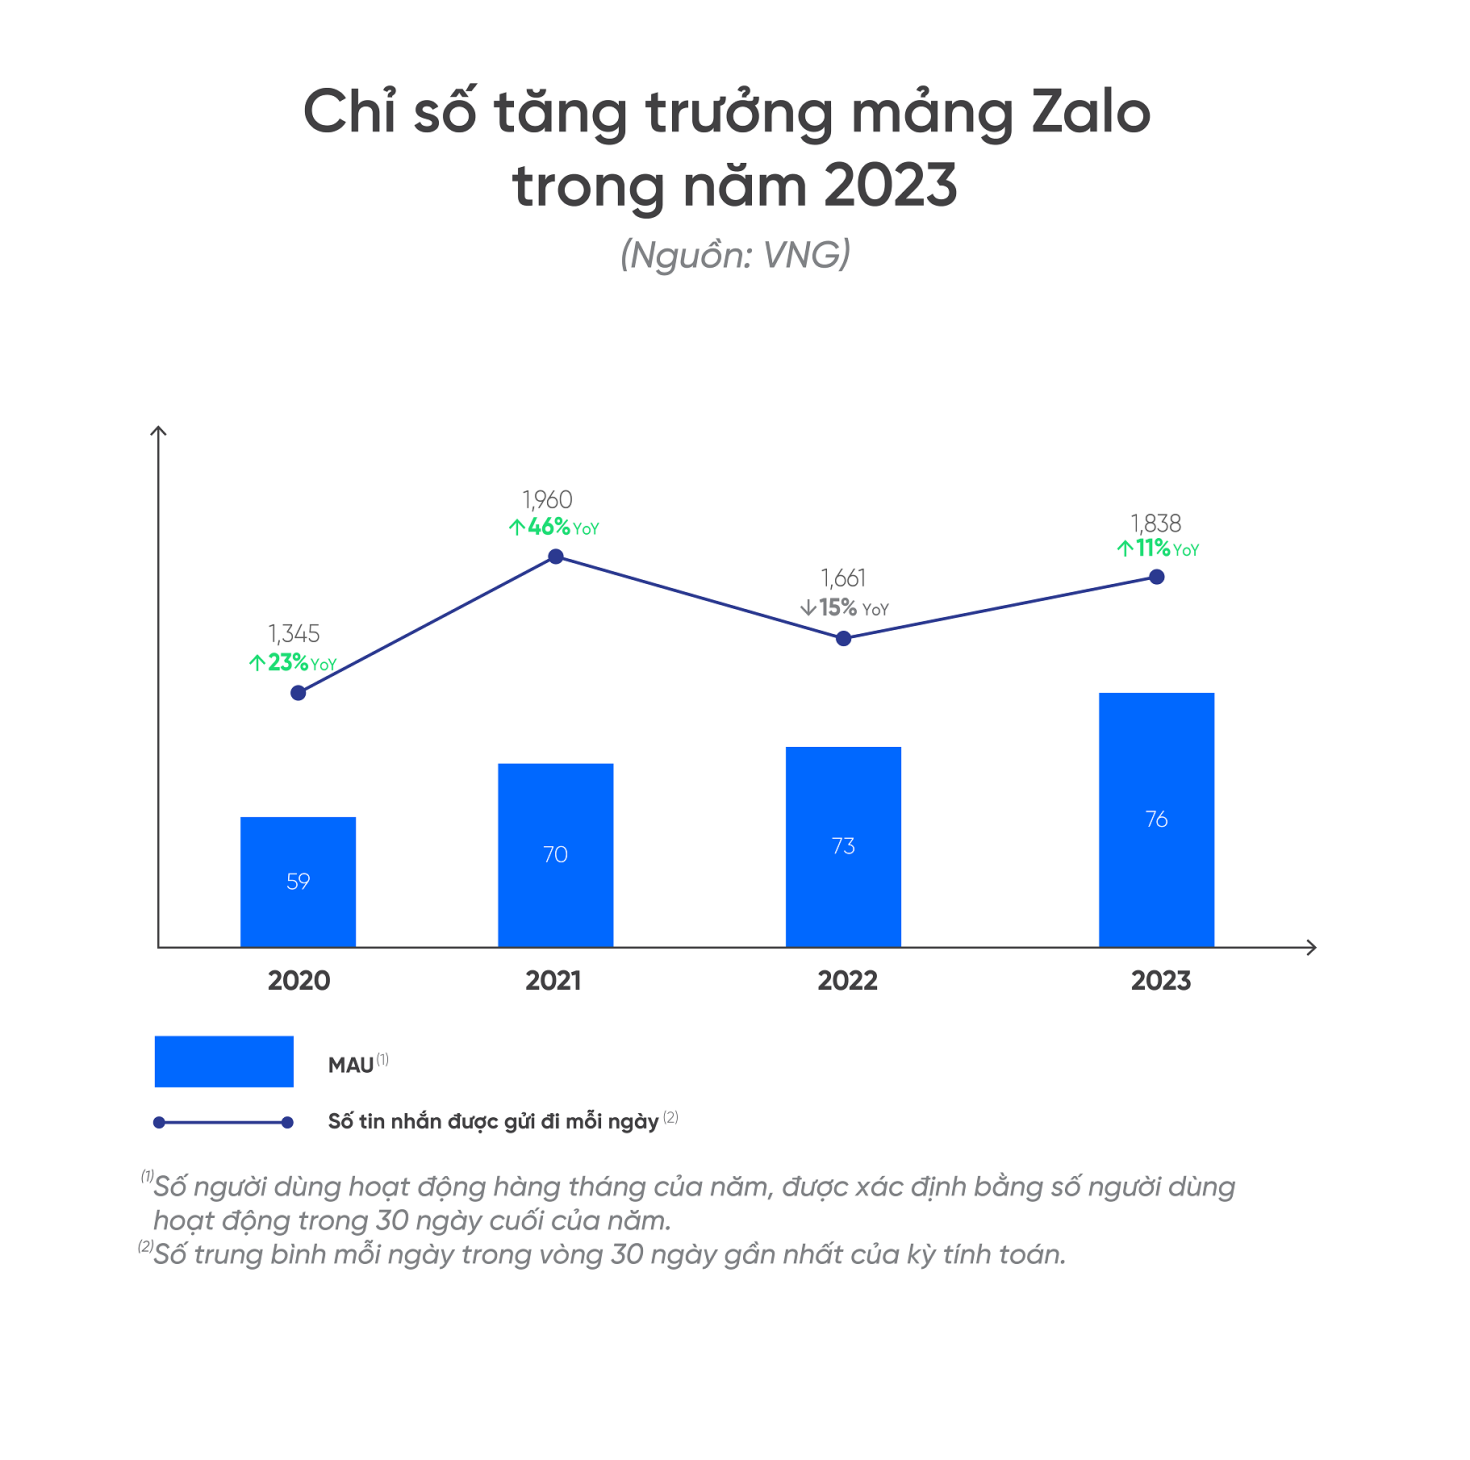 Báo cáo tài chính kiểm toán năm 2023 của VNG; sản phẩm cốt lõi tăng trưởng mạnh giúp kết quả kinh doanh khả quan - VIE Zalo